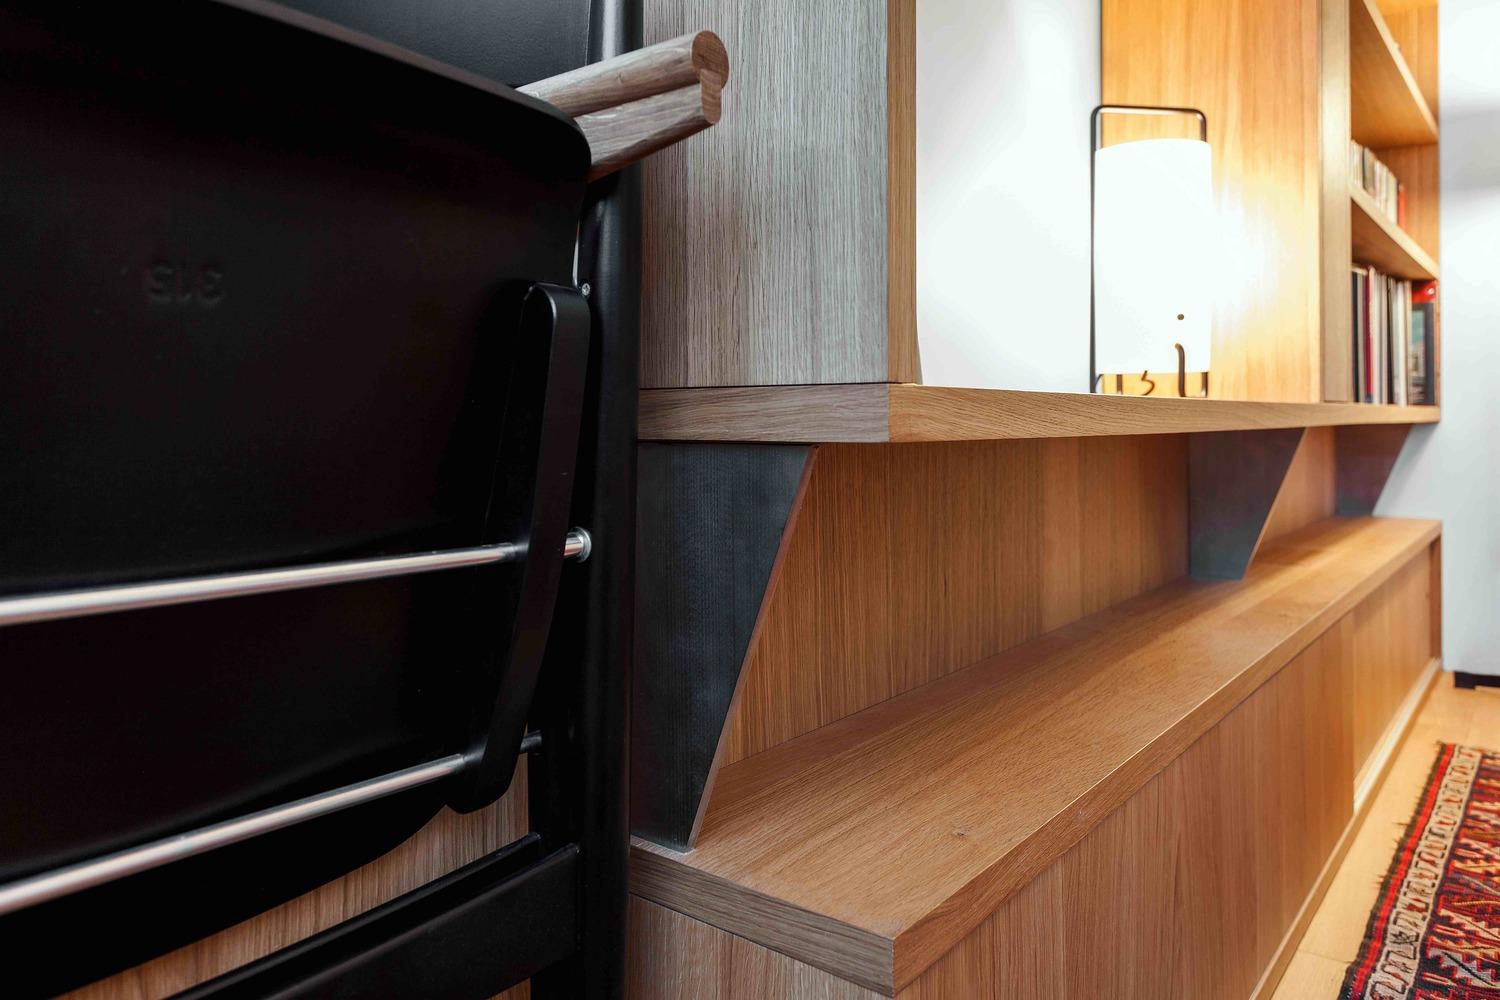 356呎家居節省空間大法 集廚房洗衣房的組合儲物櫃